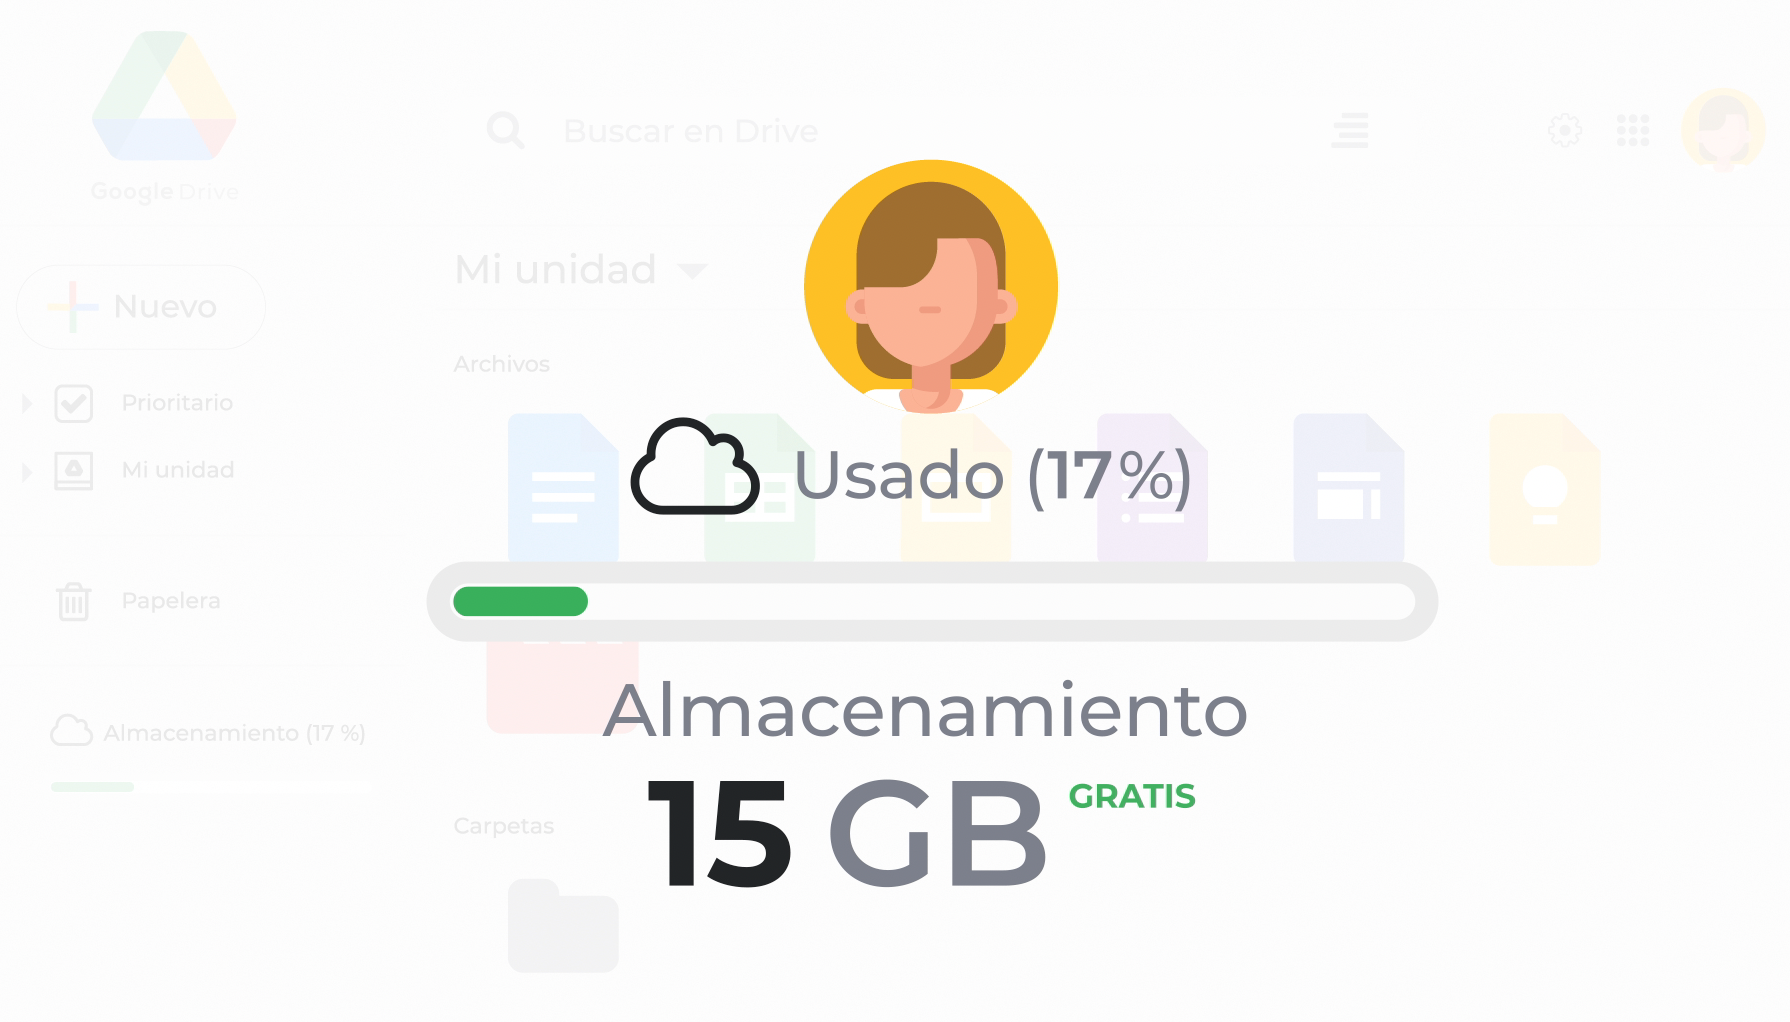 Todas las cuentas de Google Drive incluyen 15 Gigabytes de almacenamiento gratuito, si deseas obtener más espacio podrás pagar una suscripción mensual o anual para tener mayor almacenamiento en tu cuenta.